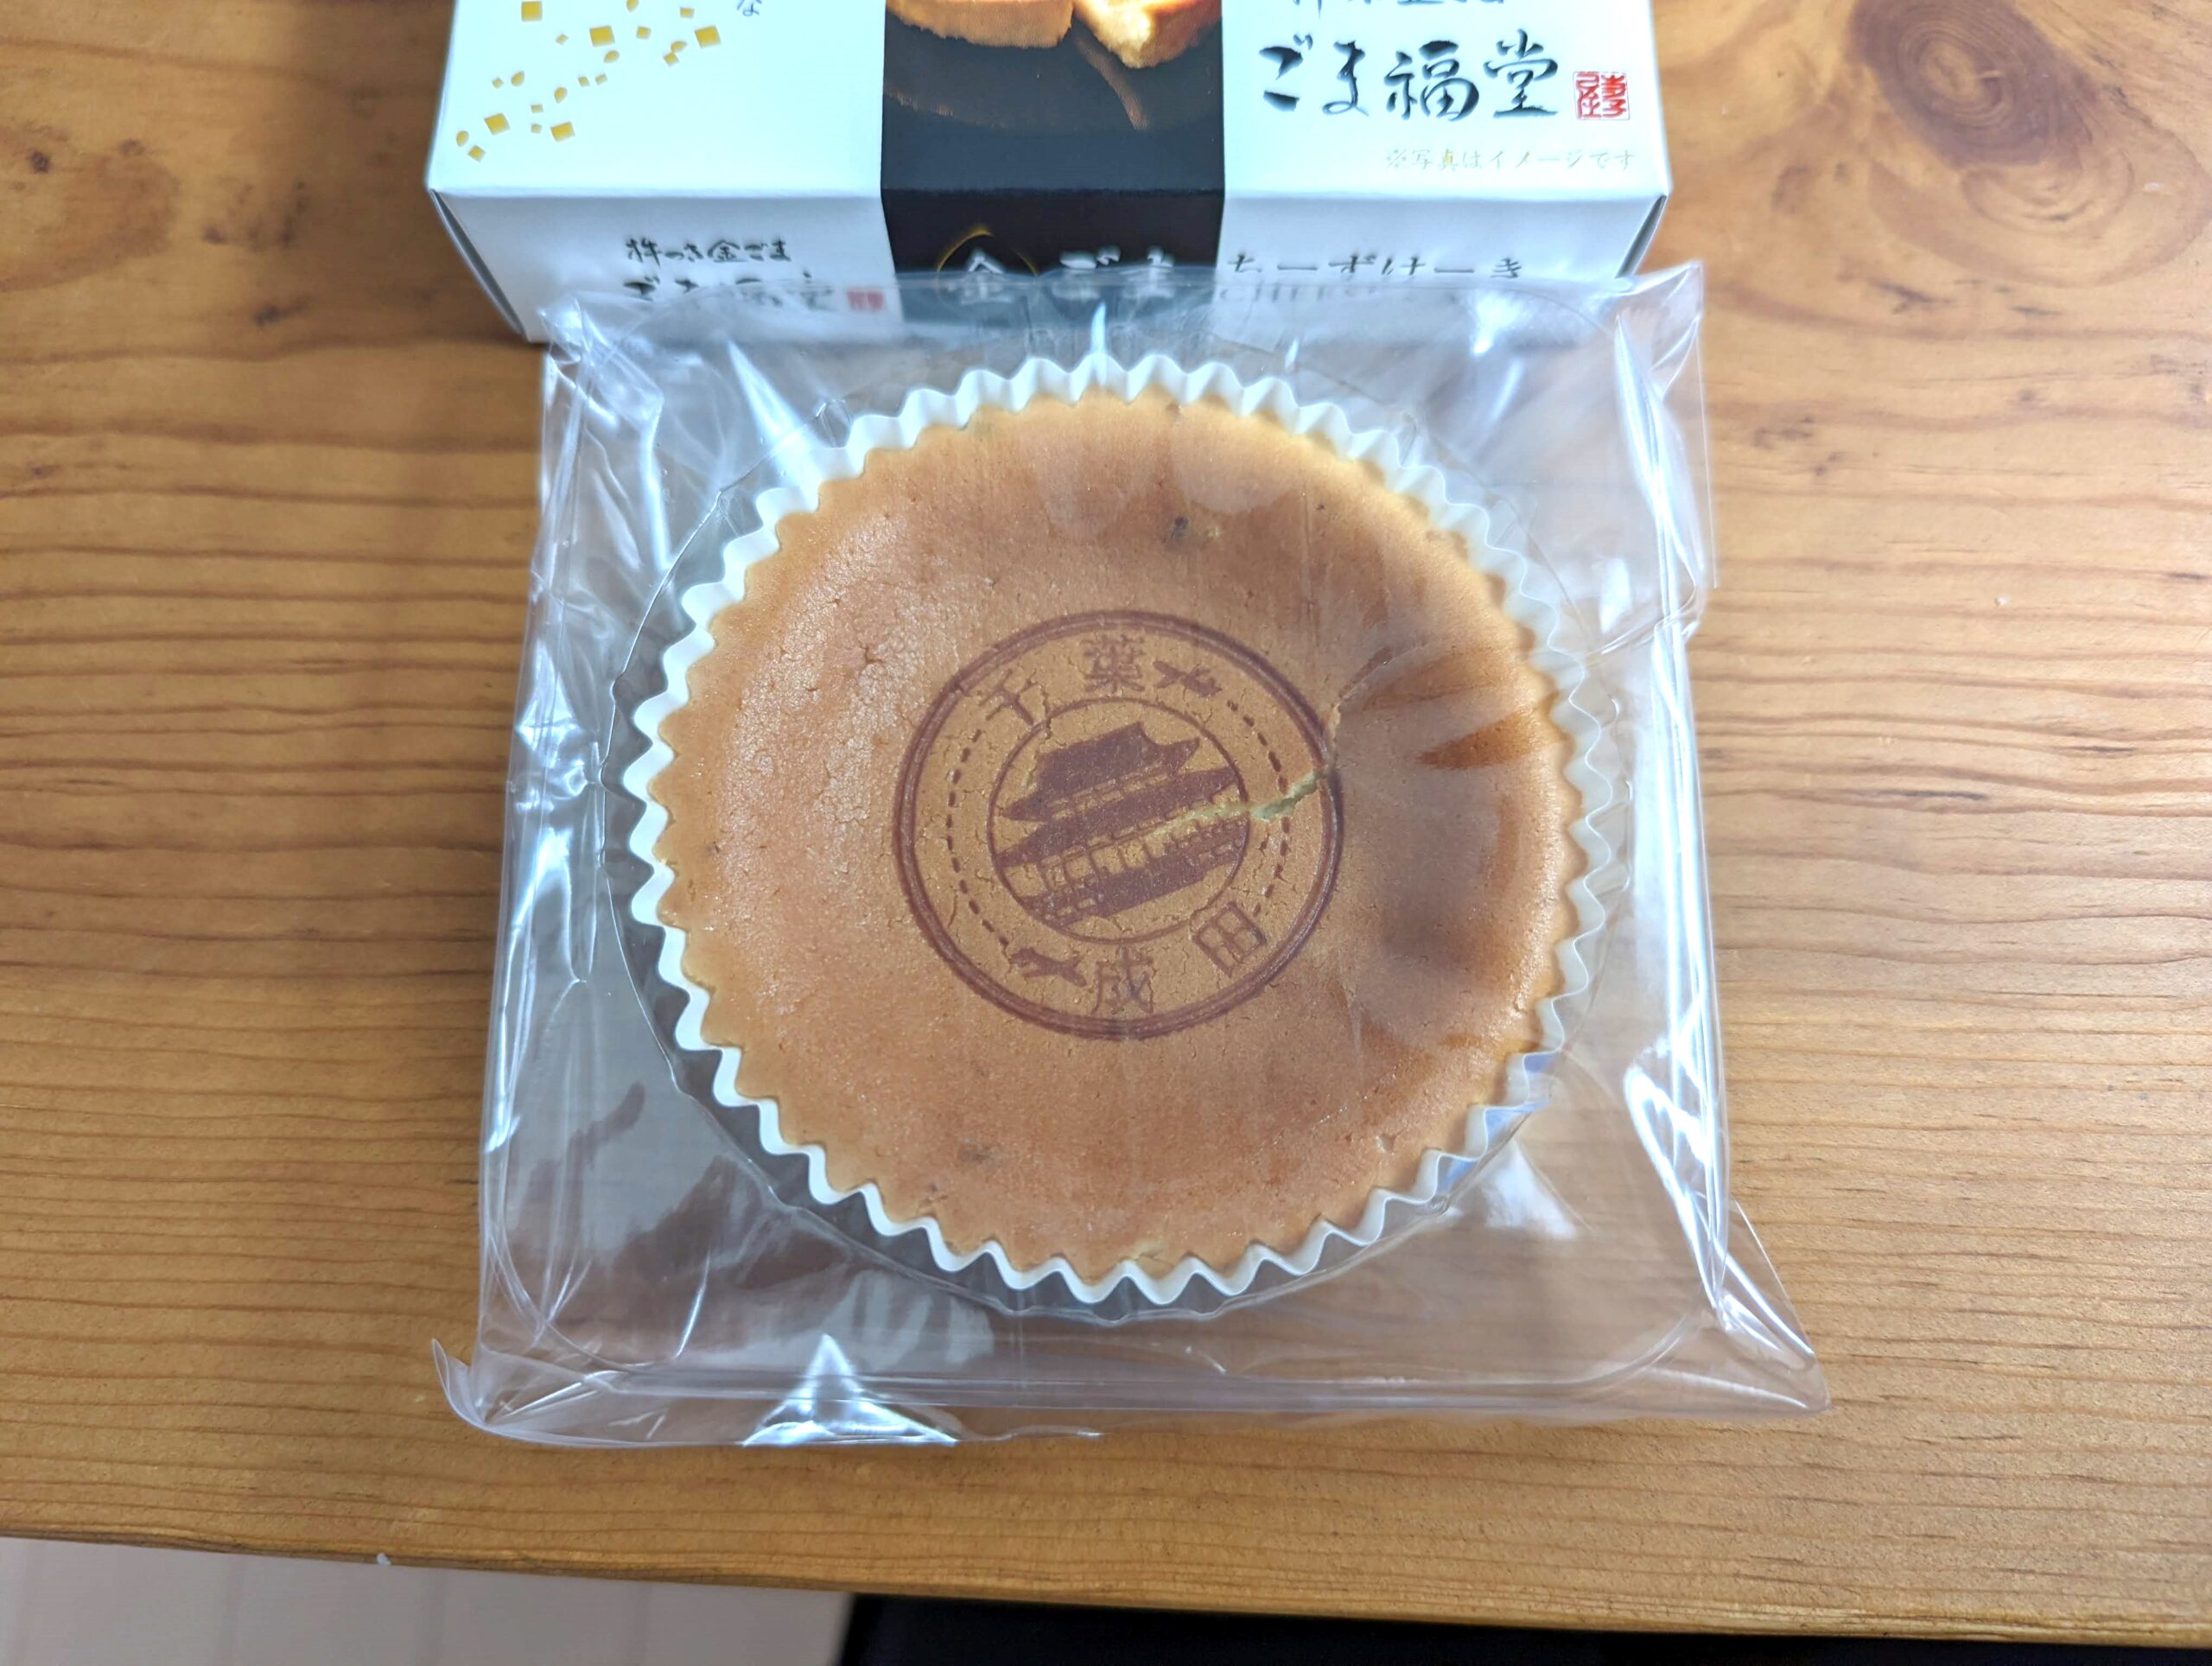 プチフロマージュ・ごま福堂の「金ごまチーズケーキ」 (4)